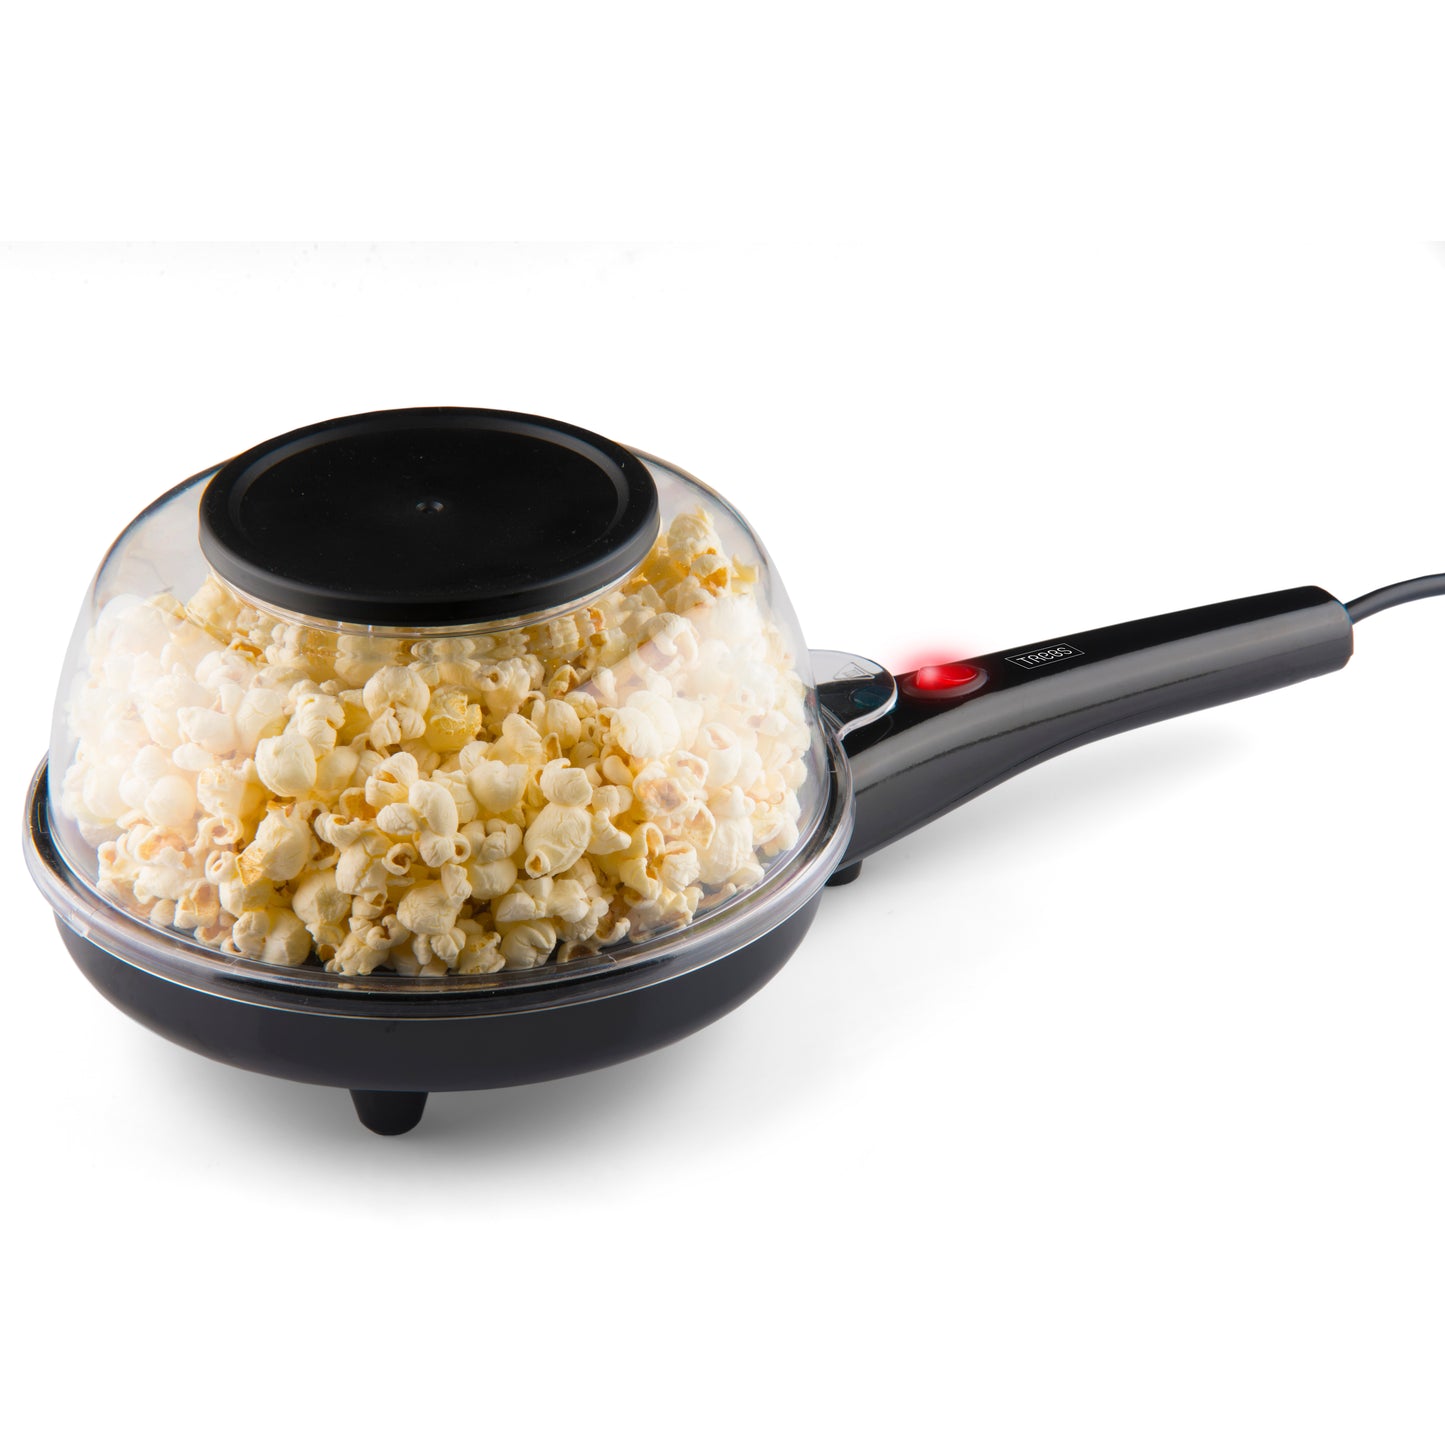 Trebs 99344 - Popcorn en crêpesmaker in één / Comfortcook met recepten, beslag verdeler, maatbeker en olielepel